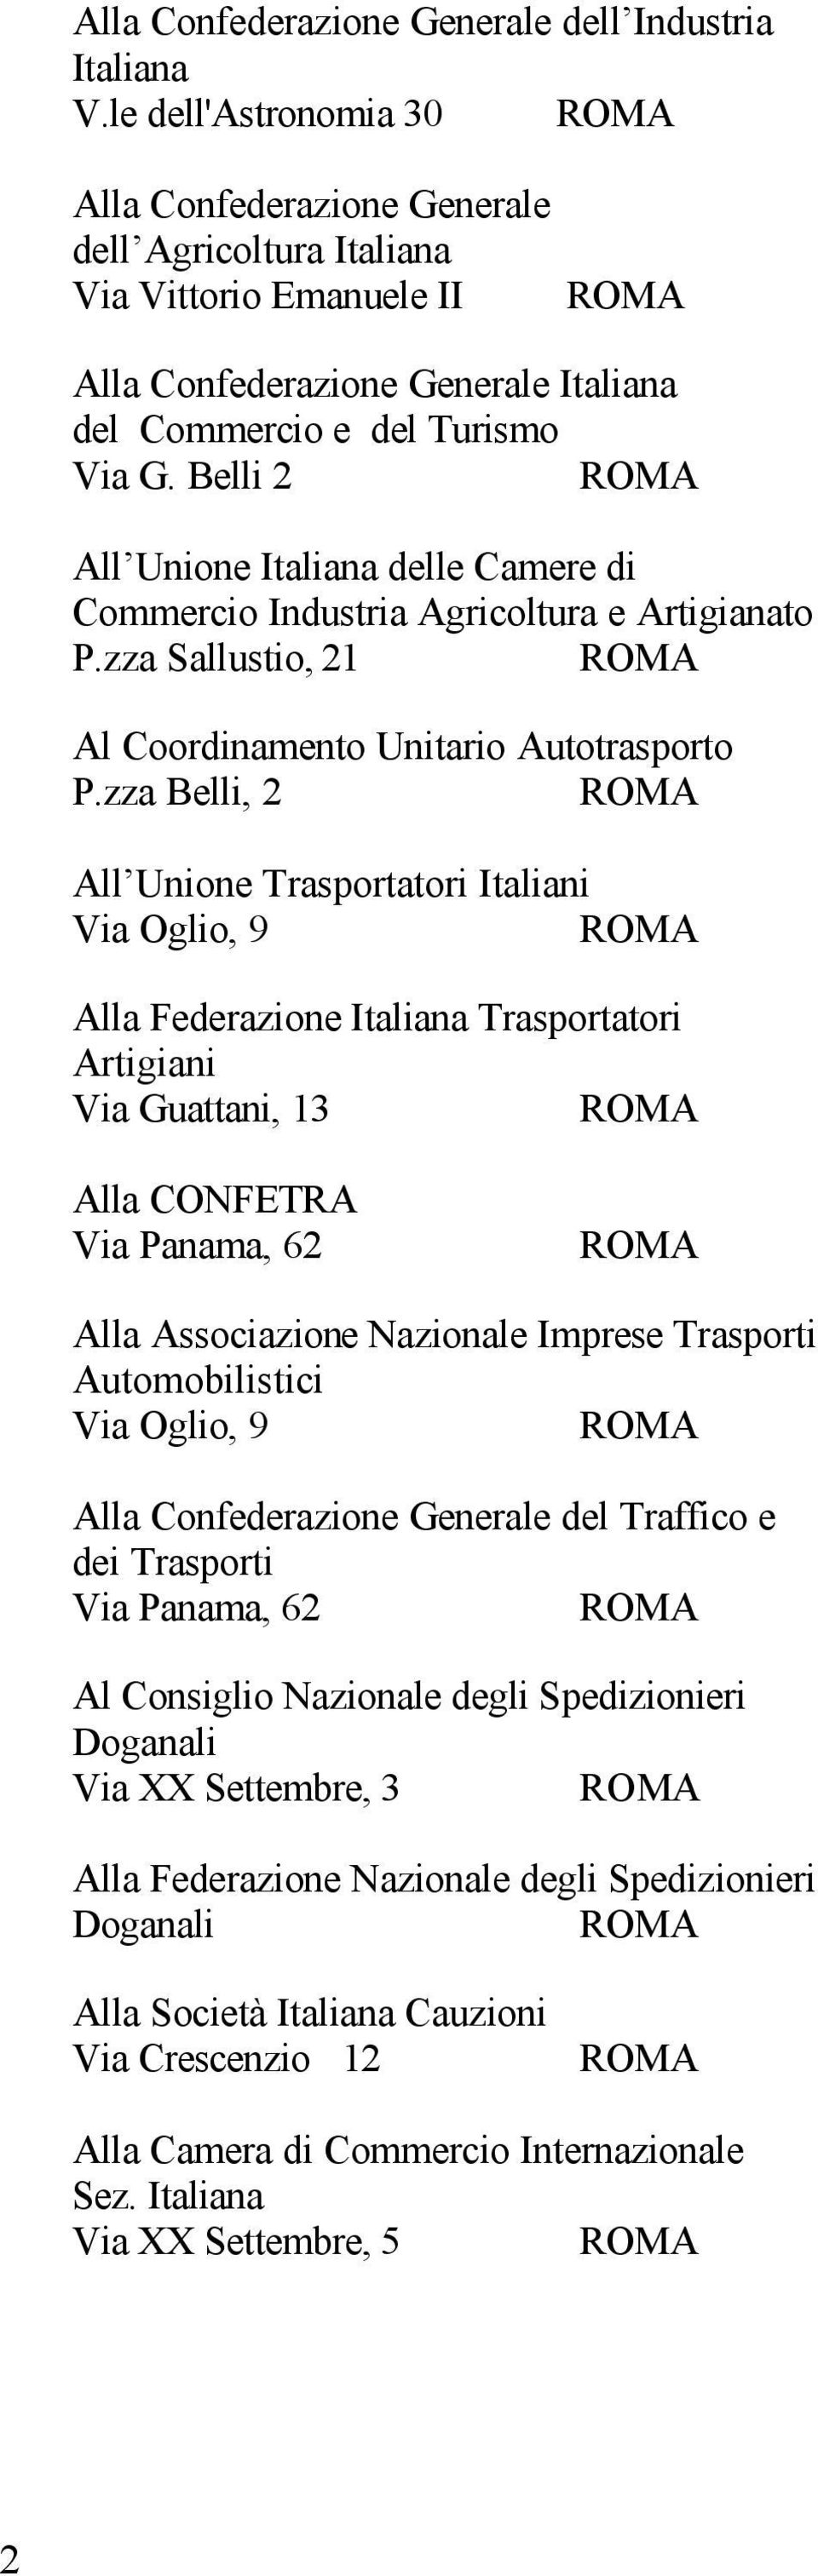 Belli 2 All Unione Italiana delle Camere di Commercio Industria Agricoltura e Artigianato P.zza Sallustio, 21 Al Coordinamento Unitario Autotrasporto P.